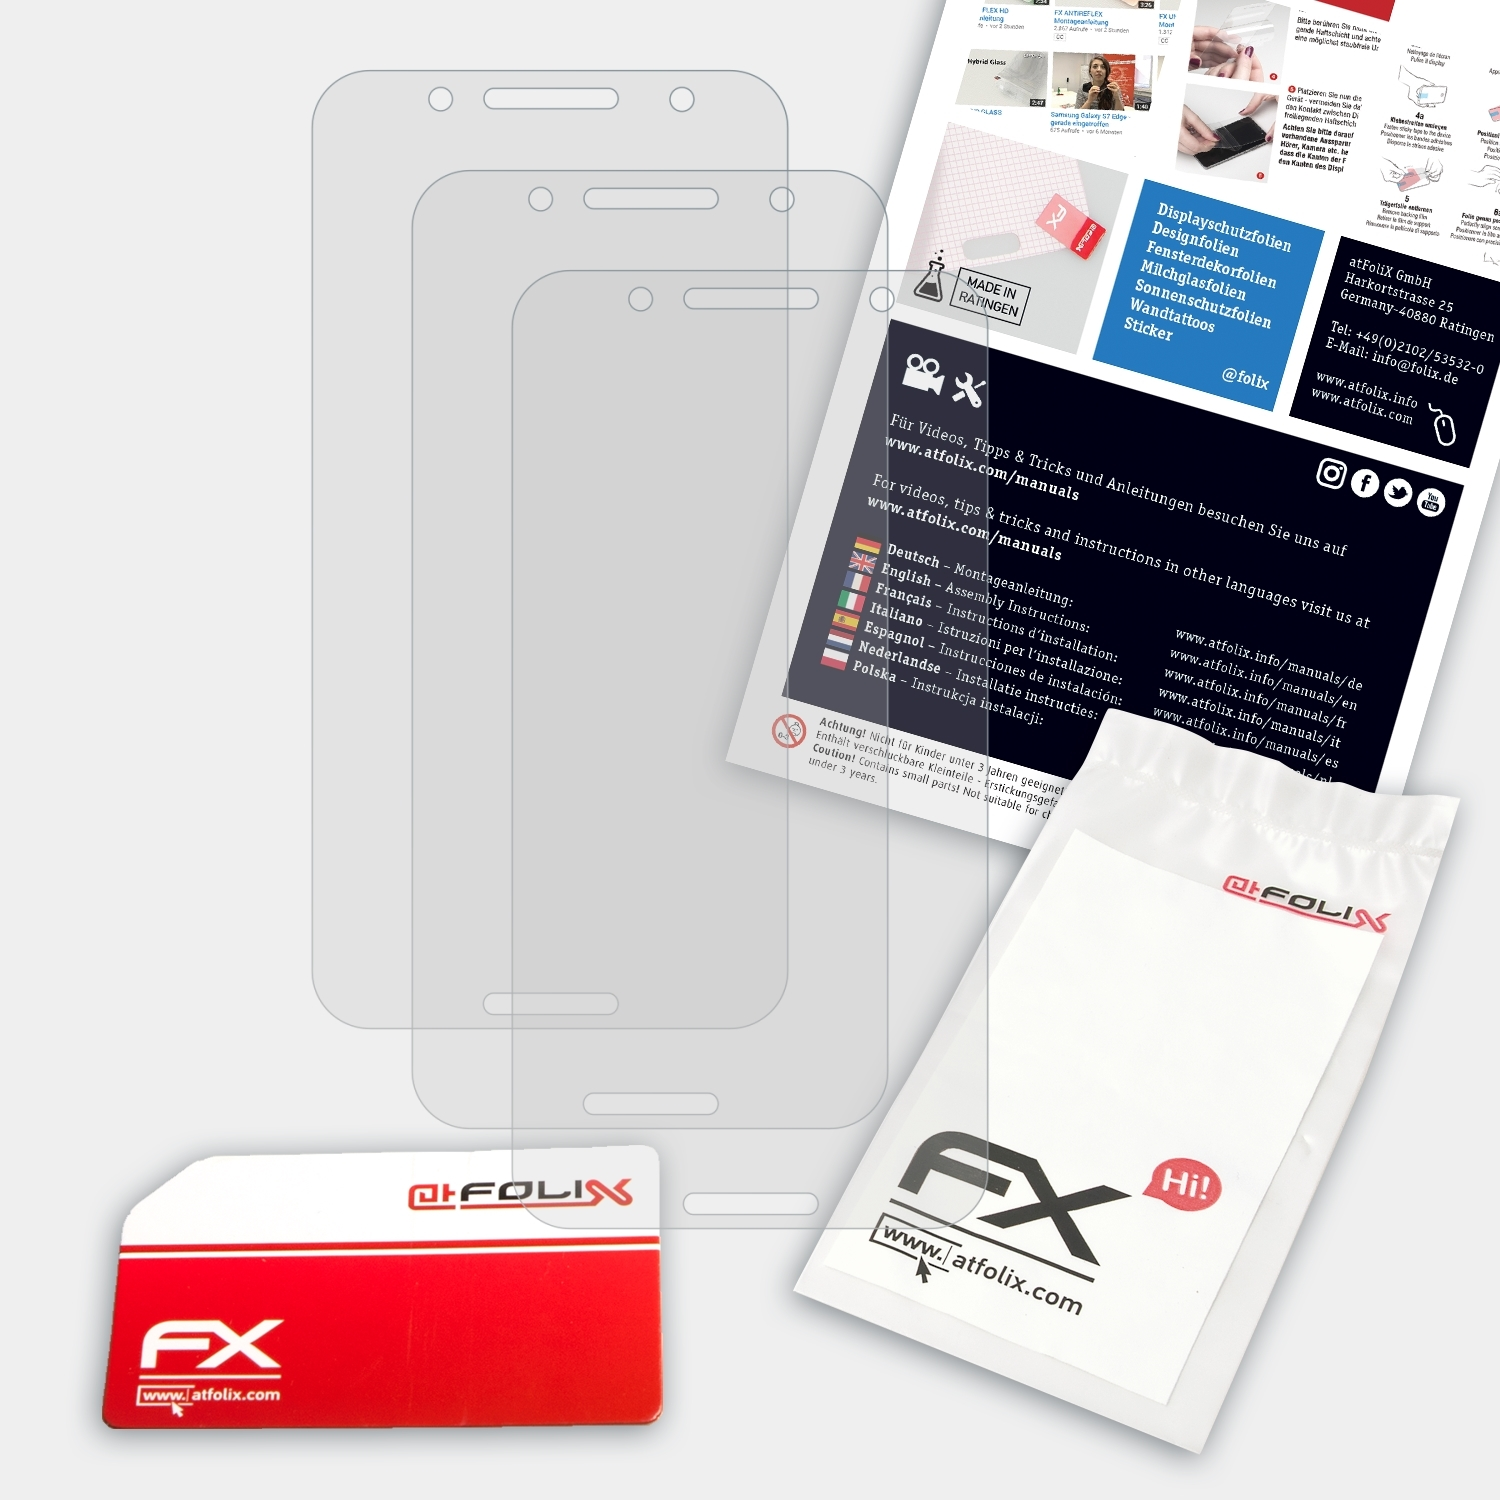 FX-Antireflex Alcatel Displayschutz(für ATFOLIX A7) 3x